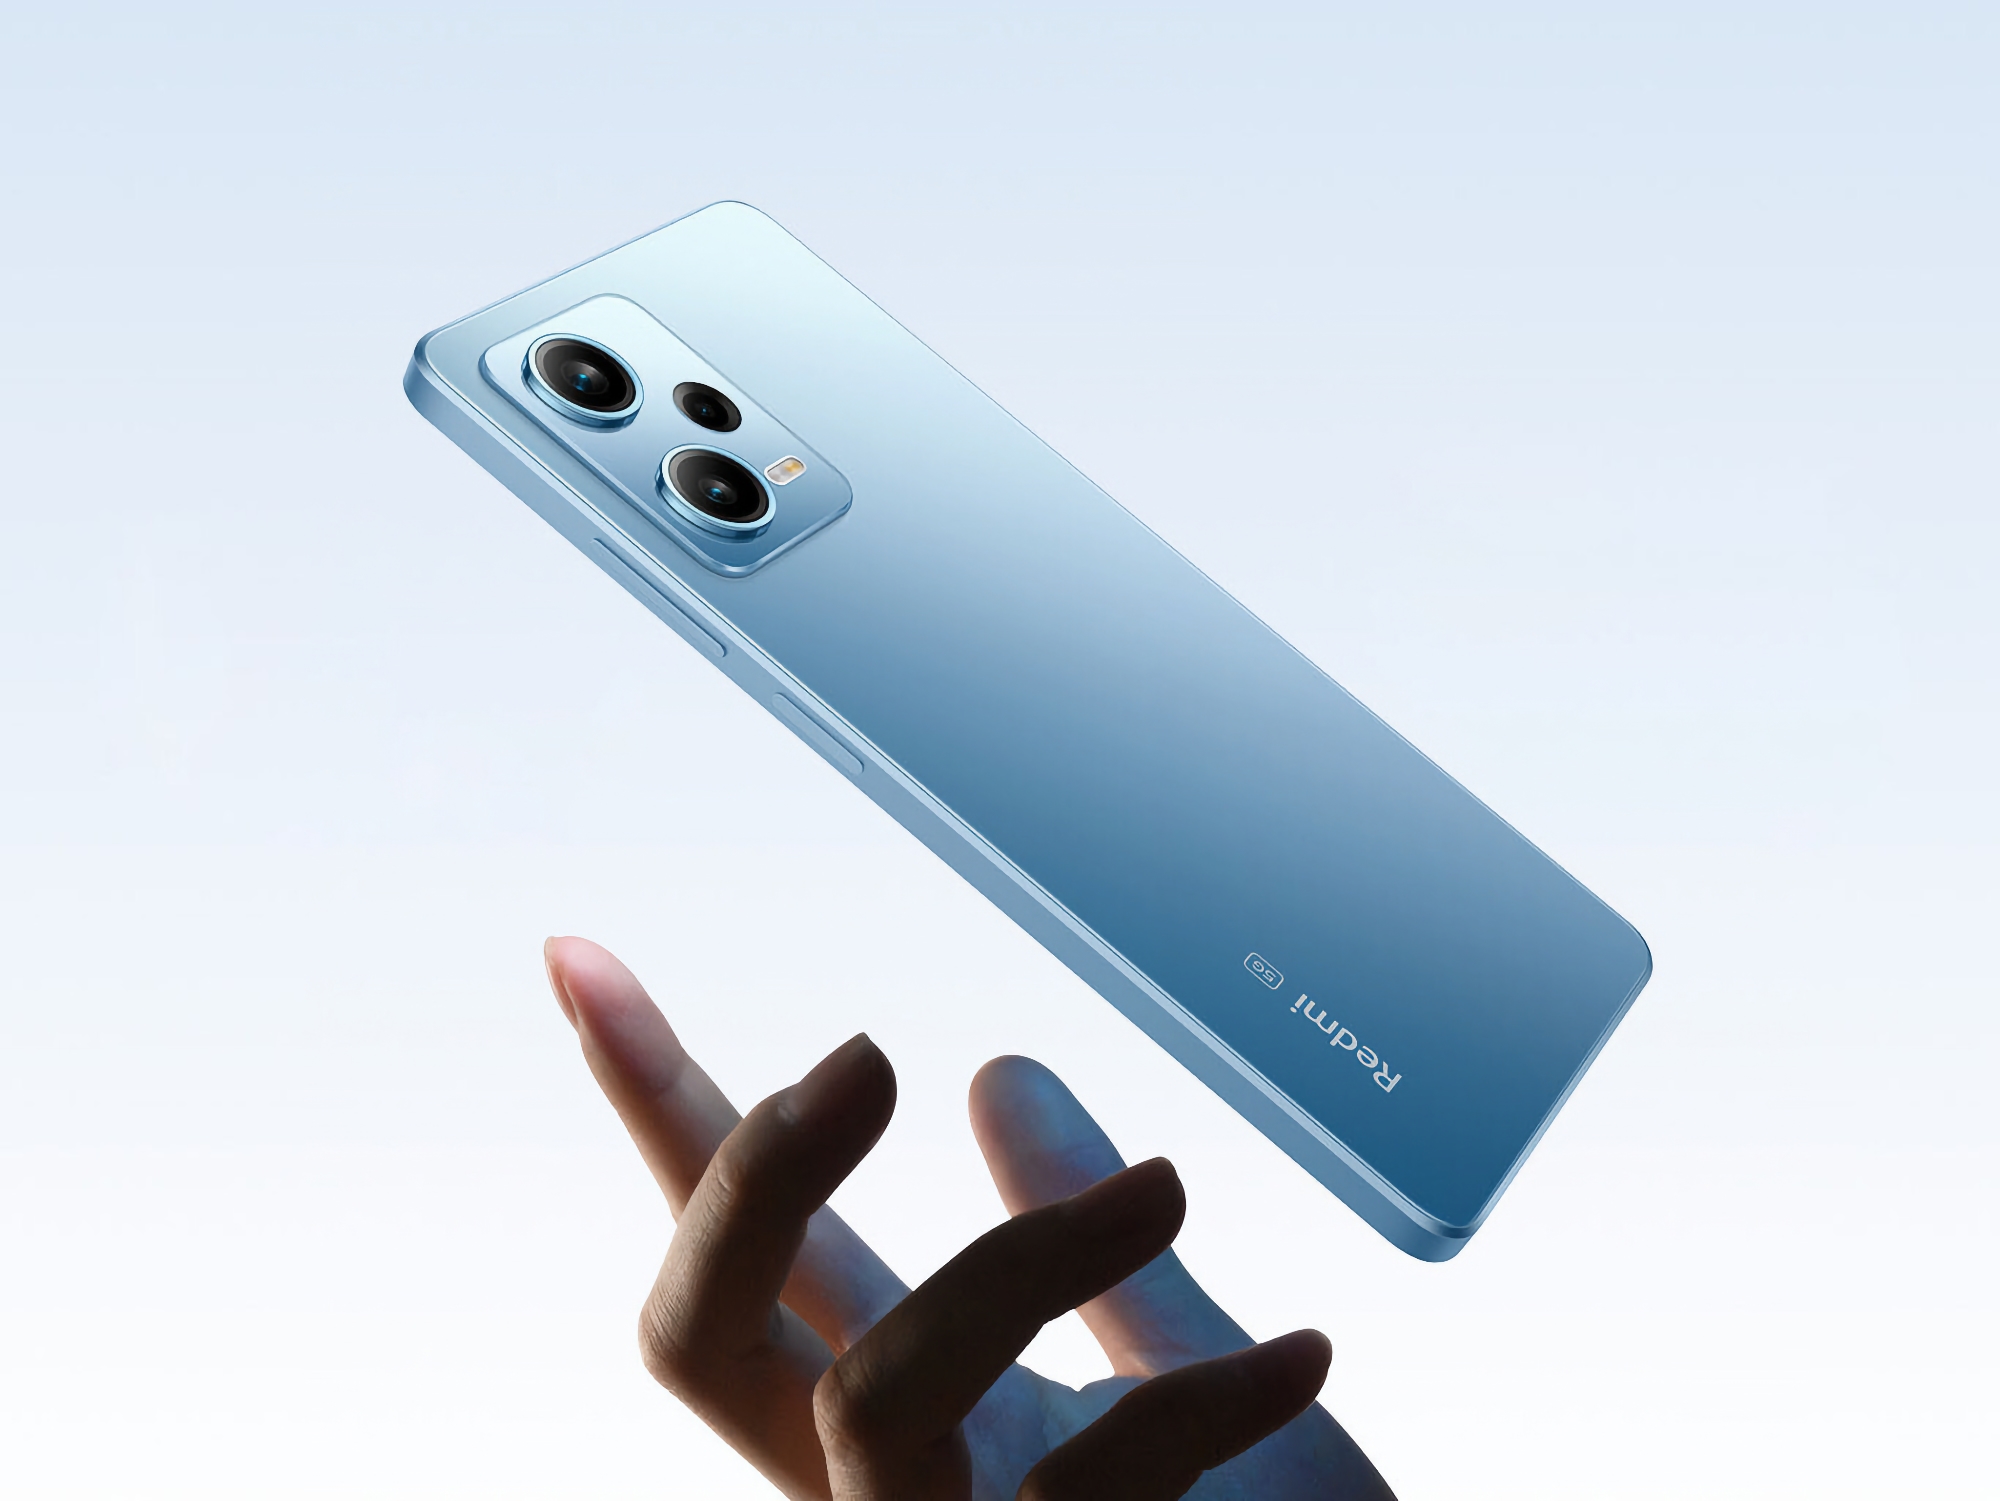 Annuncio vicino: Xiaomi inizia a rilasciare il teaser dello smartphone Redmi Note 12 Turbo con chip Snapdragon 7+ Gen 2